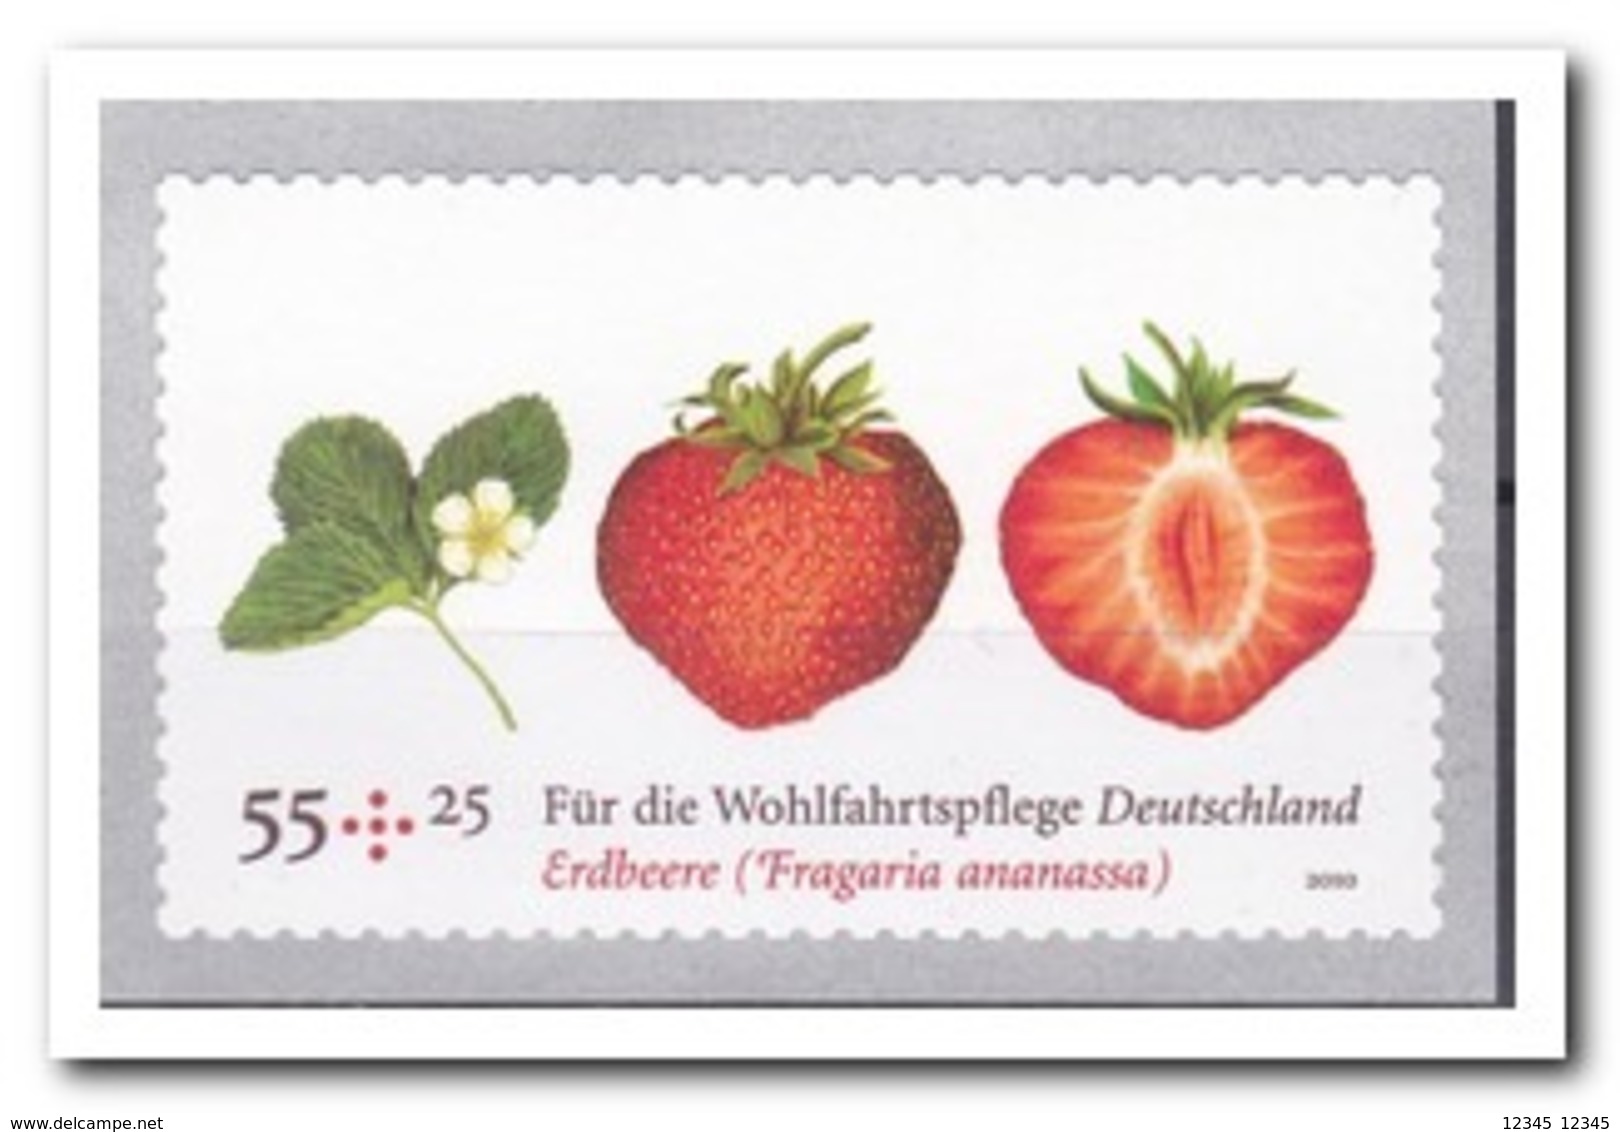 Duitsland 2010, MNH Postfris, MI 2777, Fruit - Ongebruikt